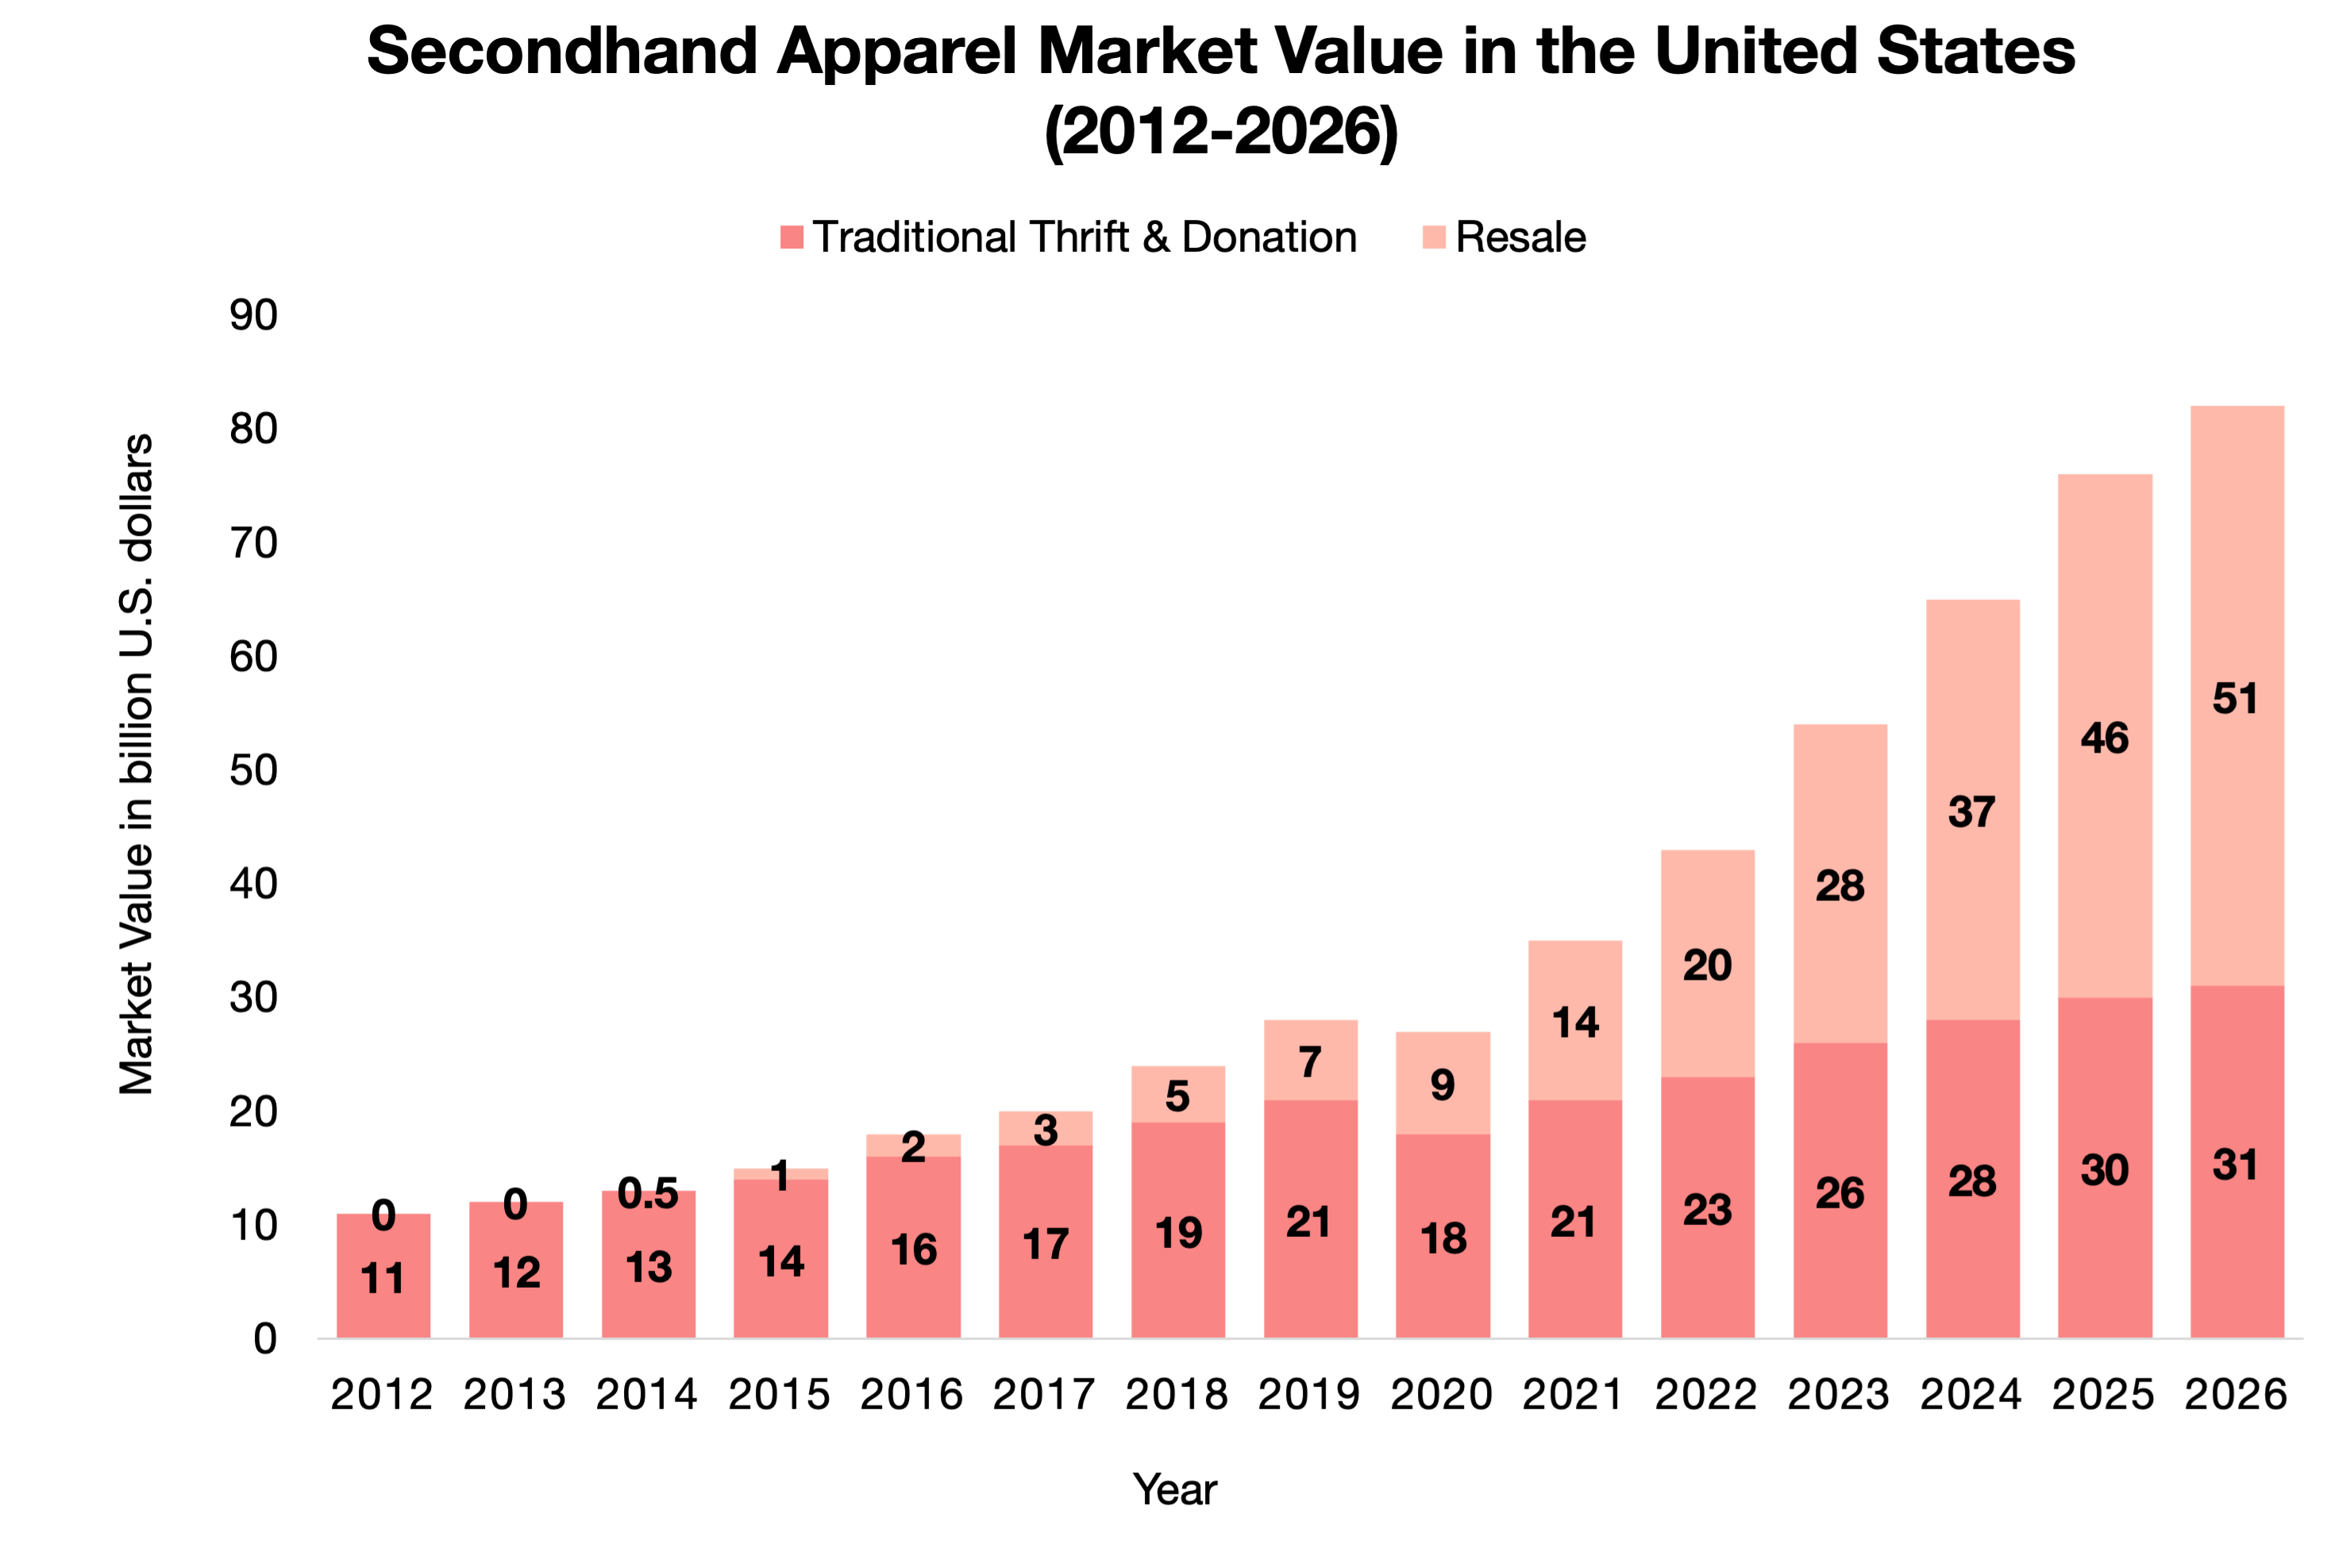 Data: Luxury second-hand market figures trail behind 2020 peak